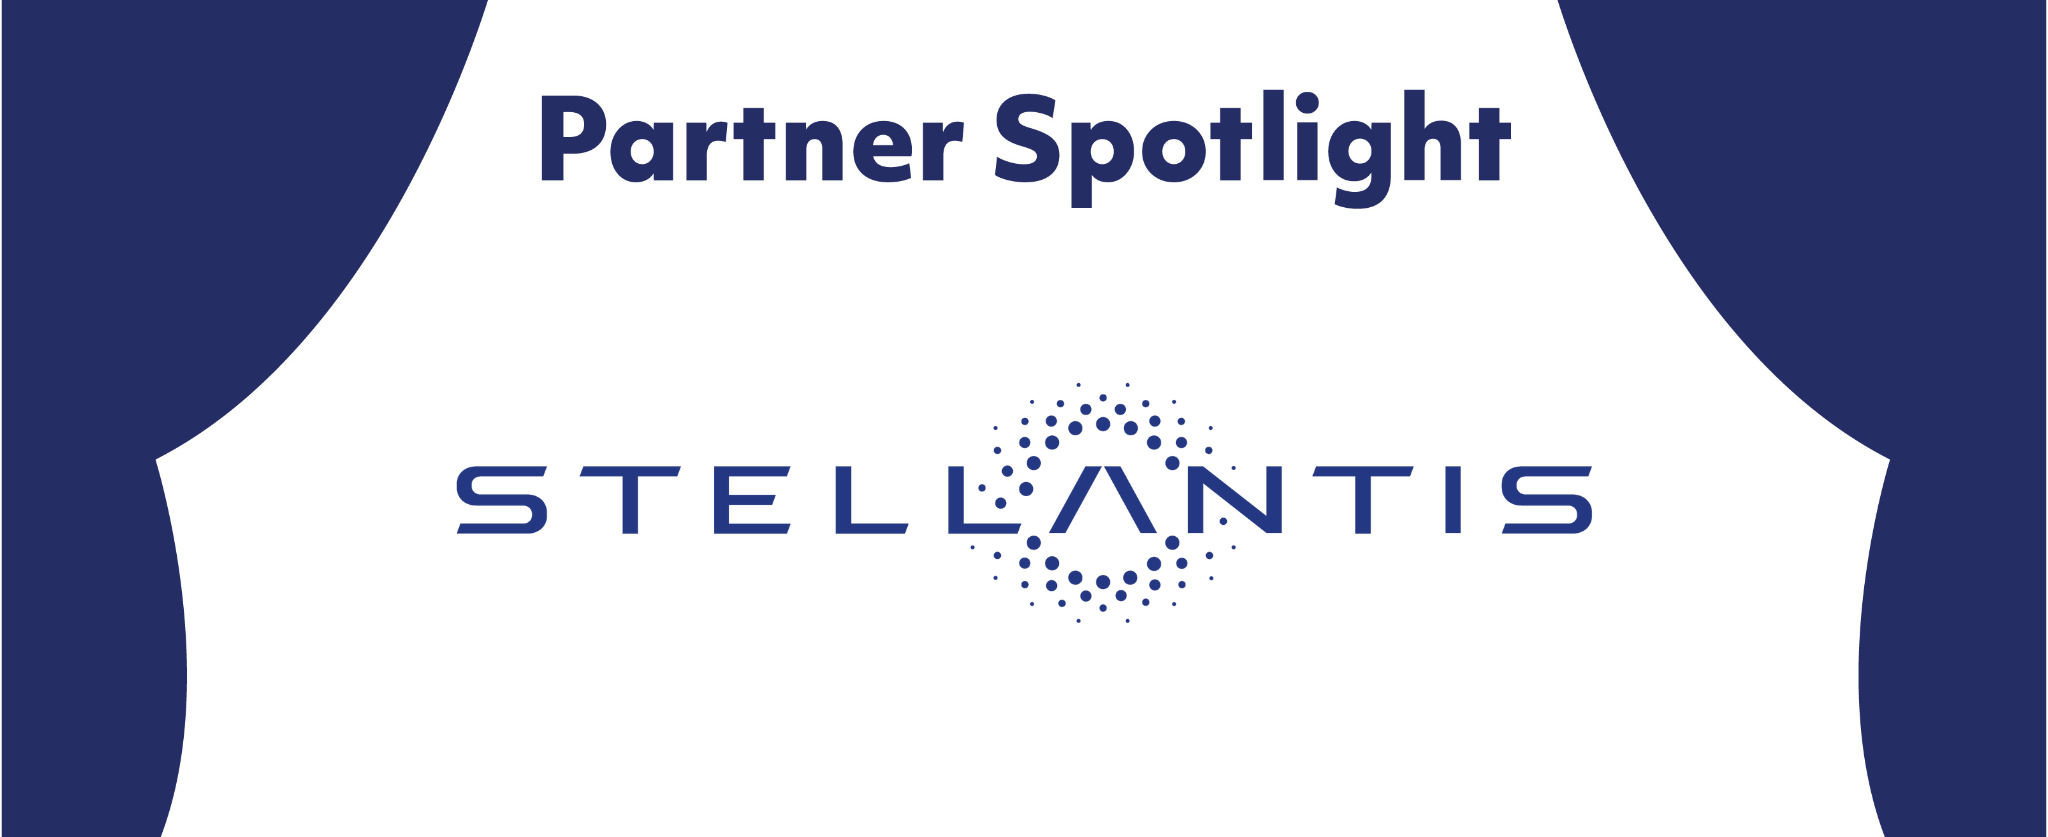 Partner Spotlight: Stellantis